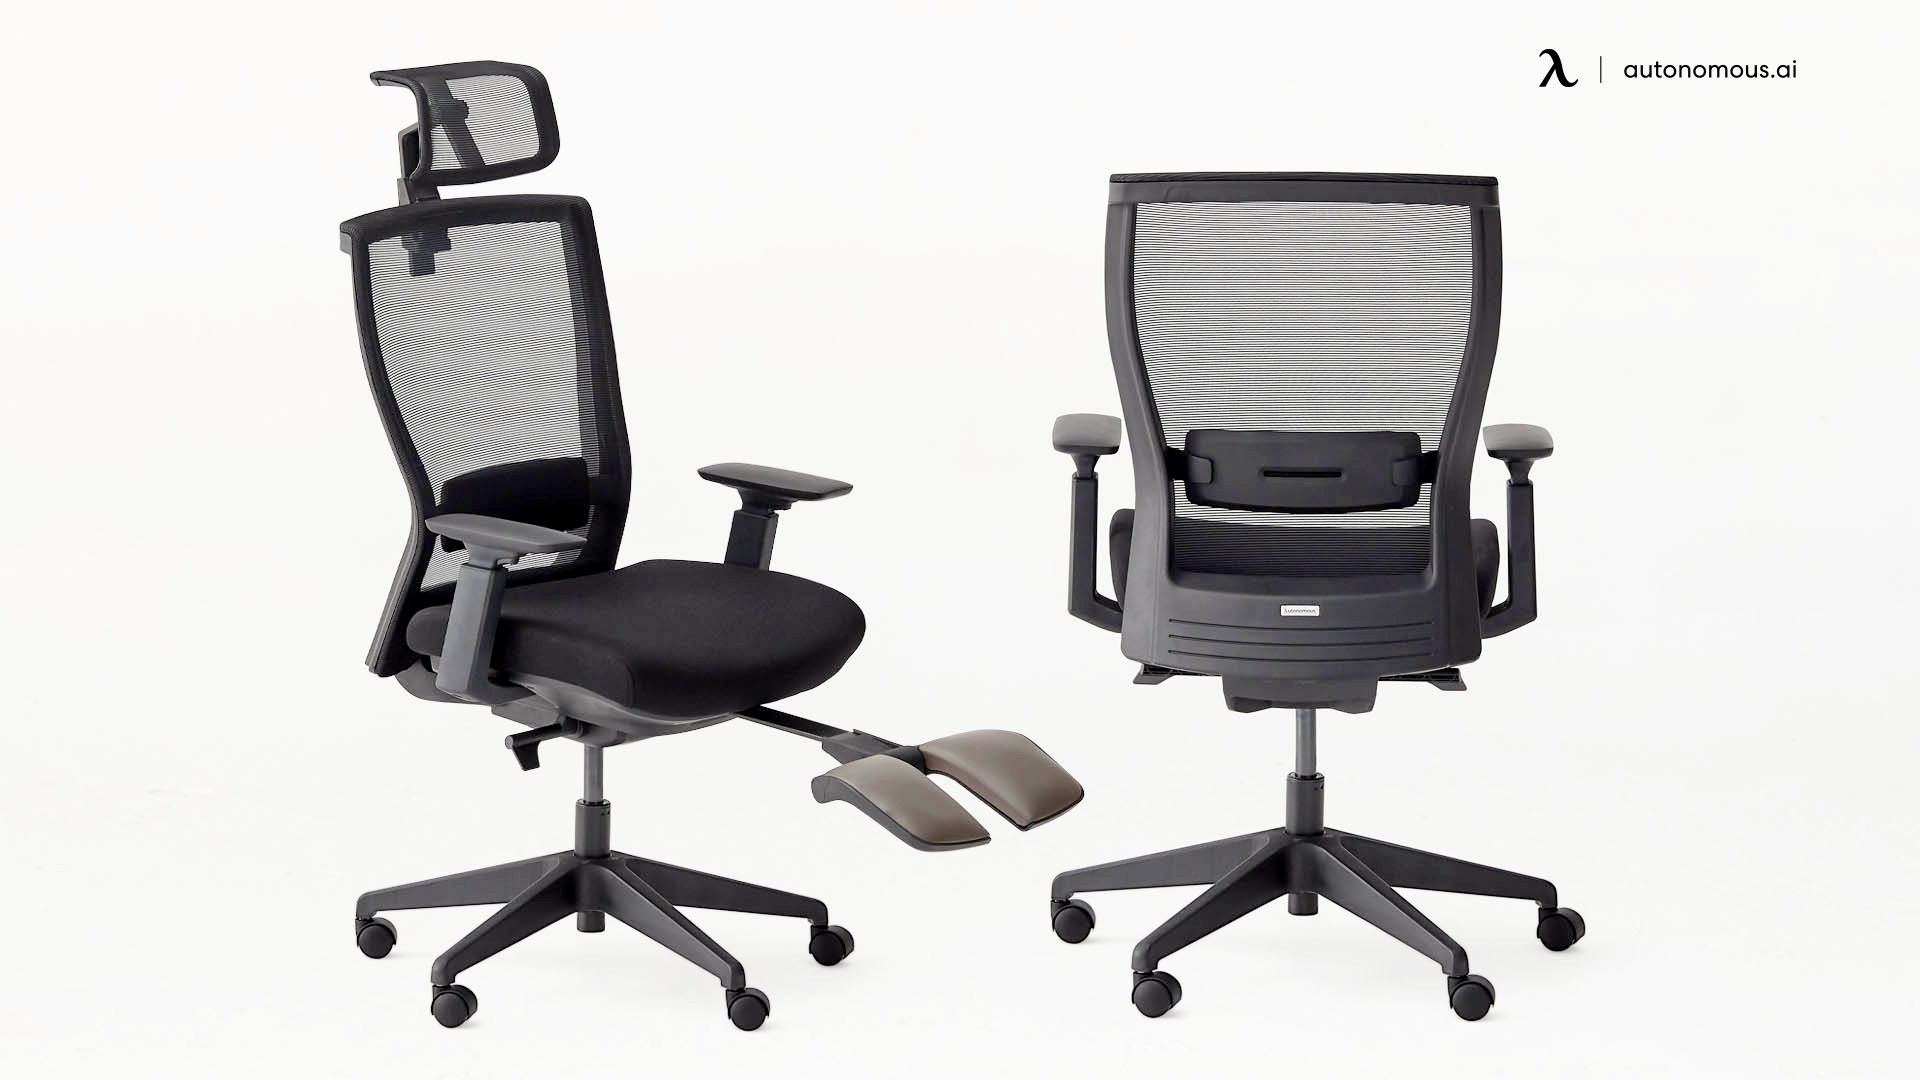 ErgoChair Recline adjustable office chair